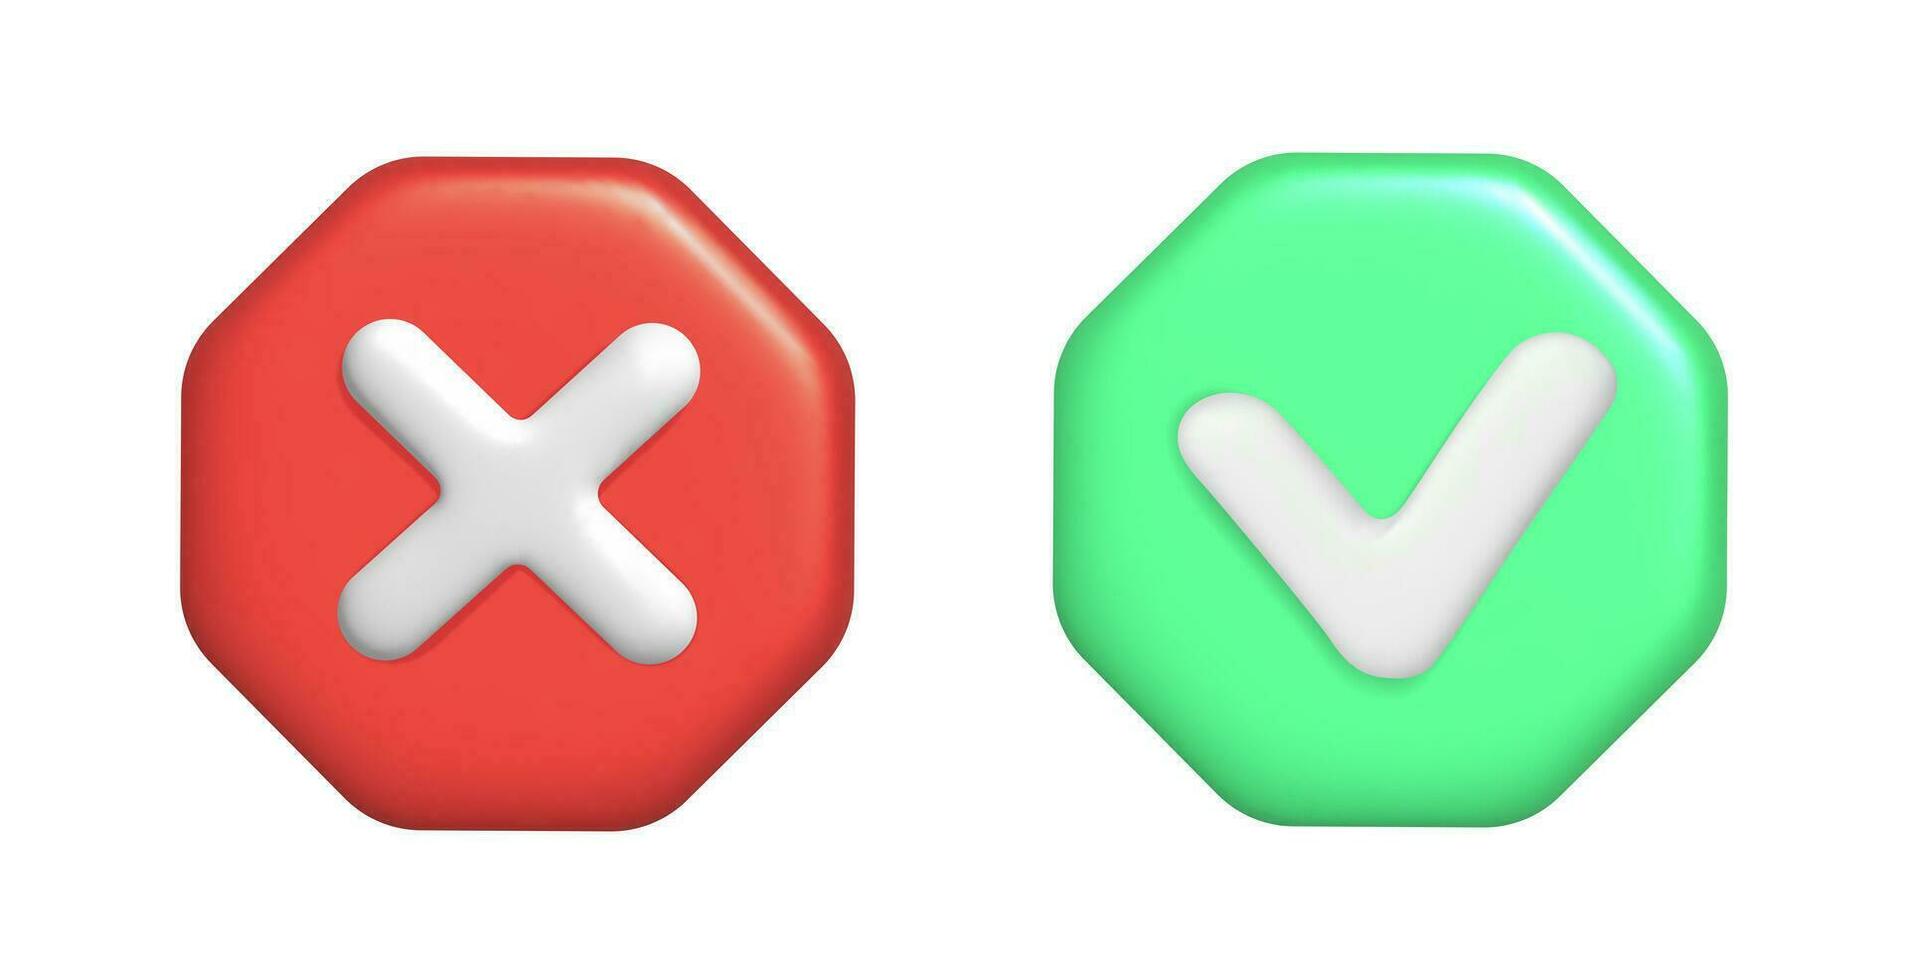 3d representación de verde cheque y rojo cruzar. vector ilustración de Derecha y incorrecto botón